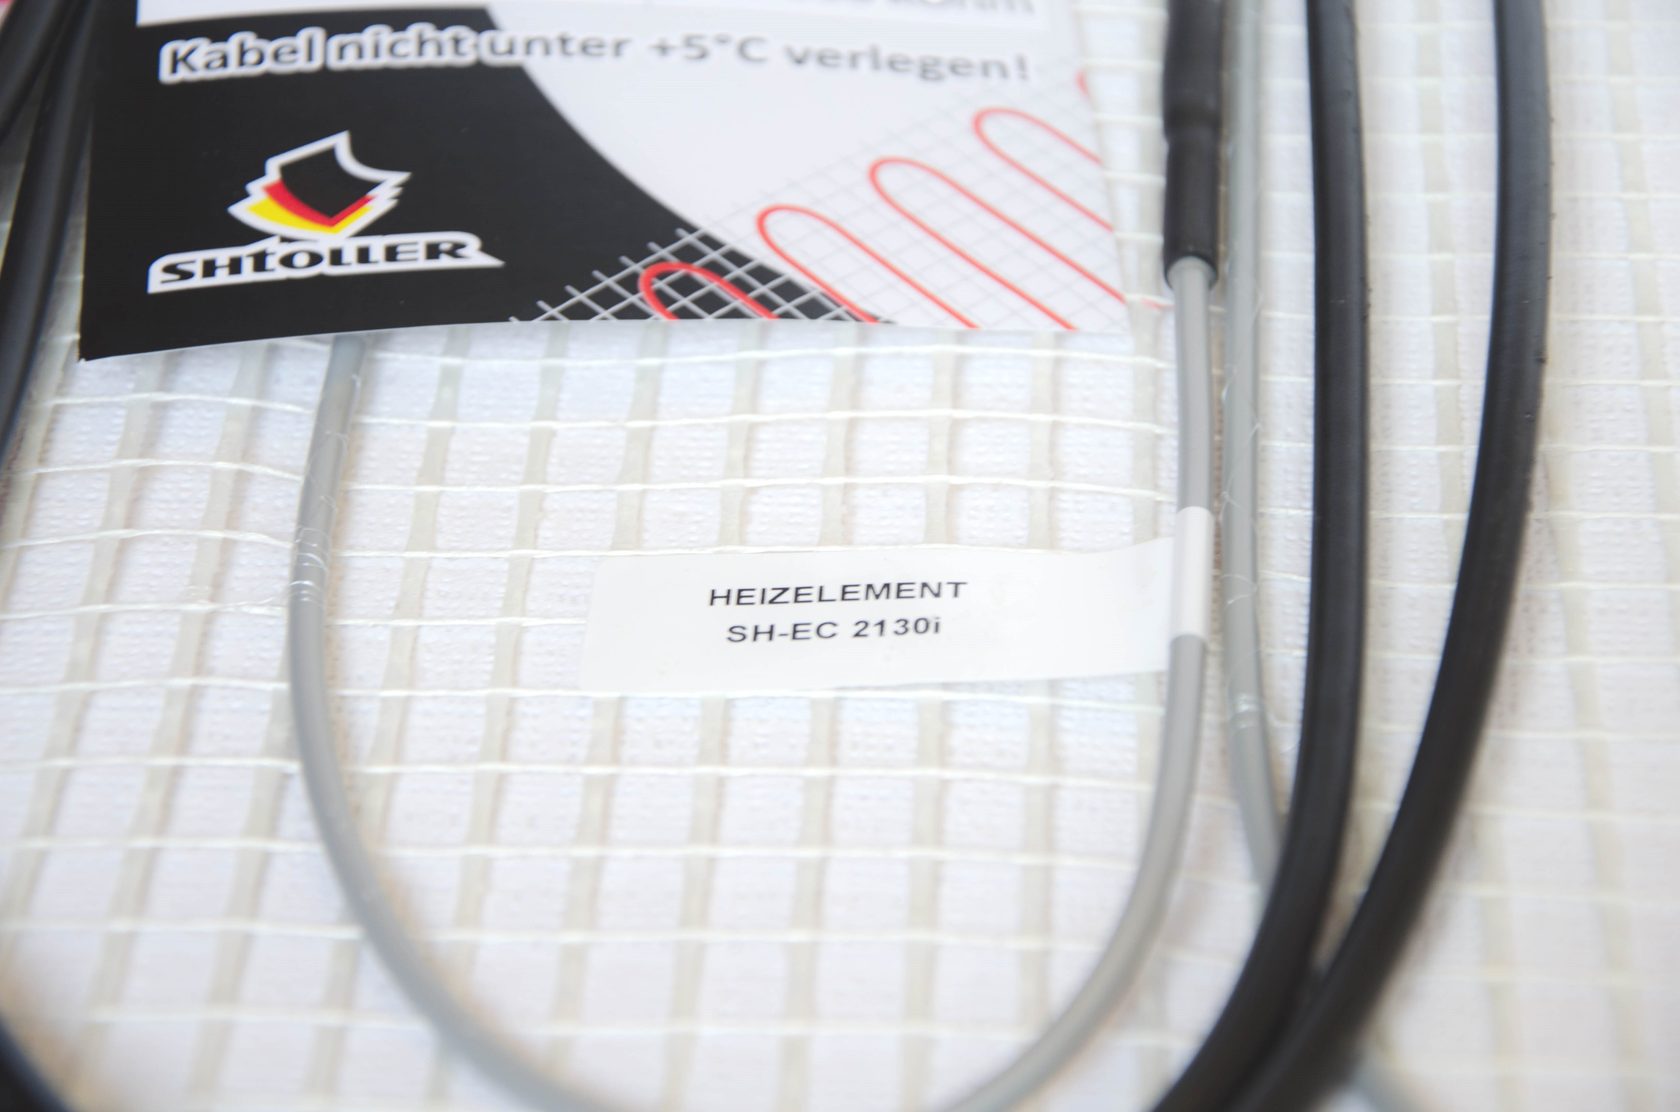 Електрична тепла підлога Shtoller SH-EC 21150i відгуки - зображення 5